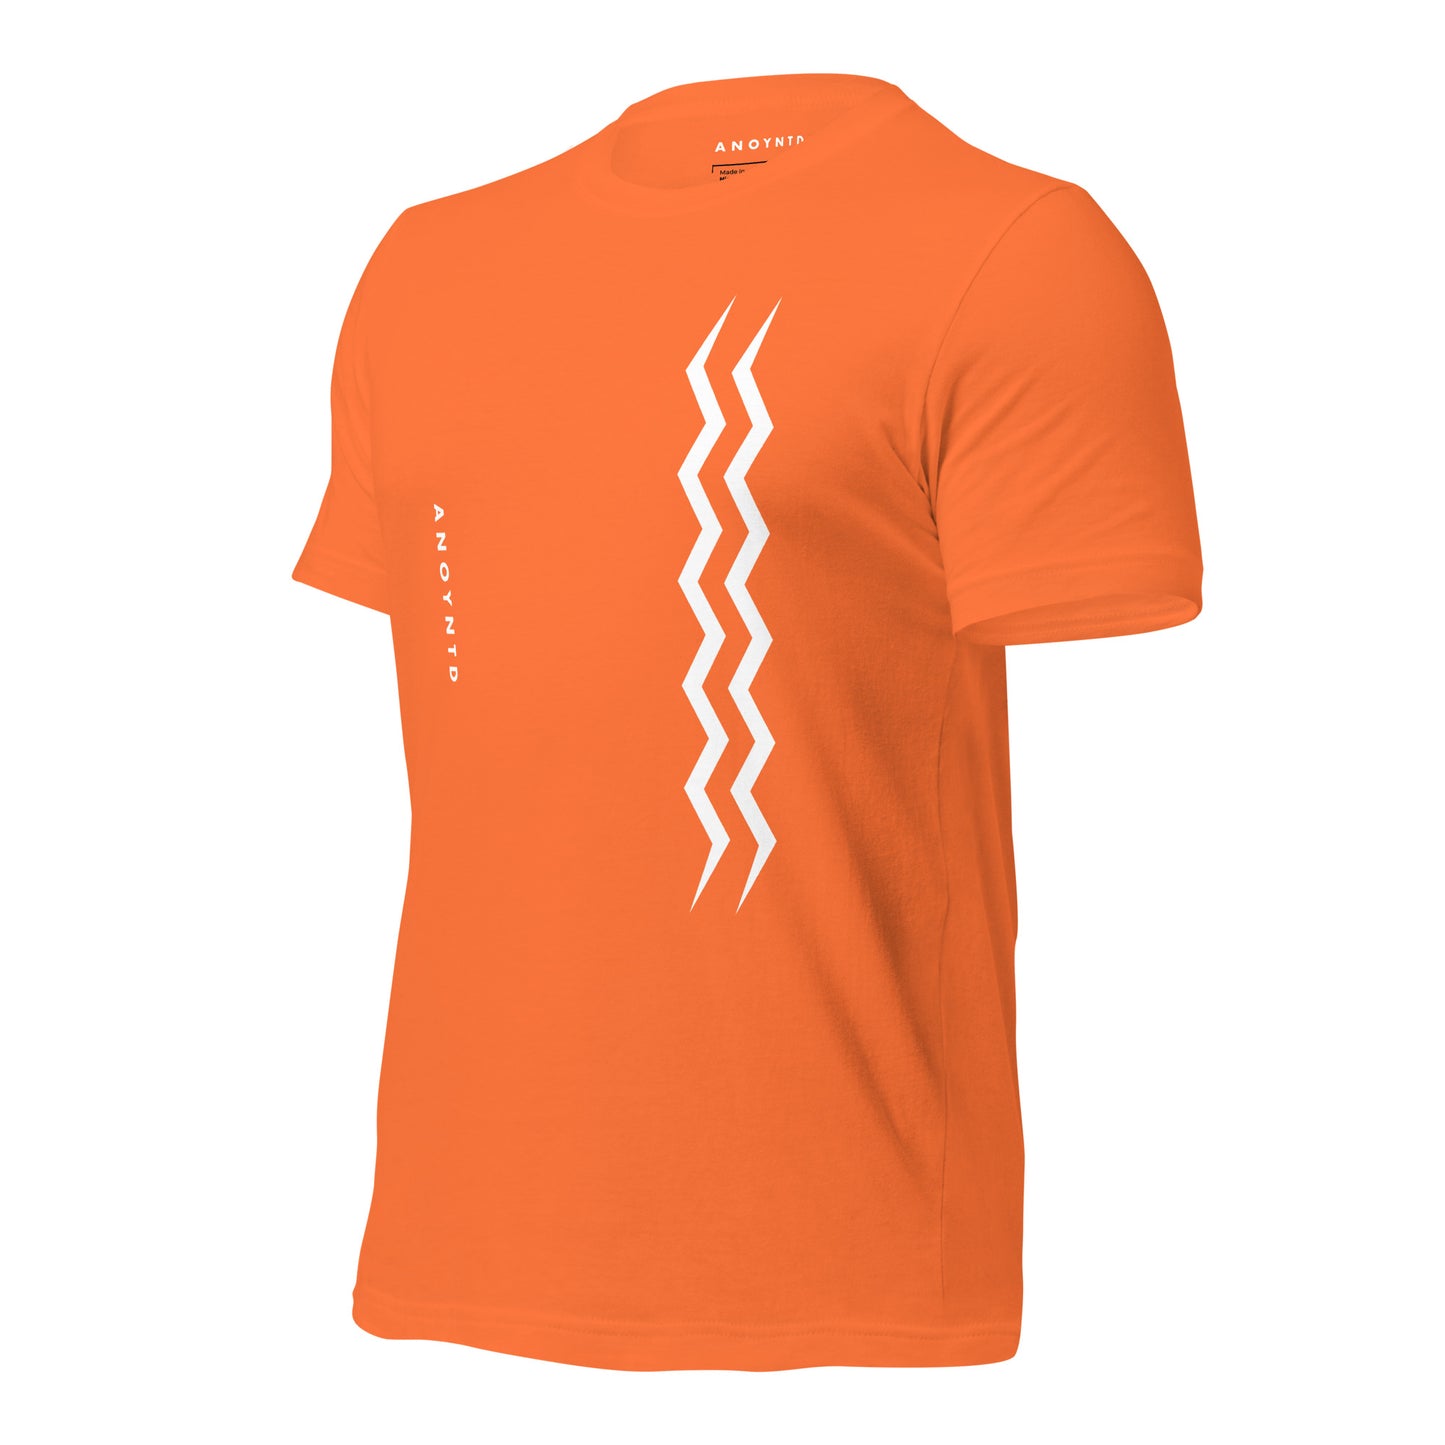 ANOYNTD Vertical Series (W) Unisex t-shirt